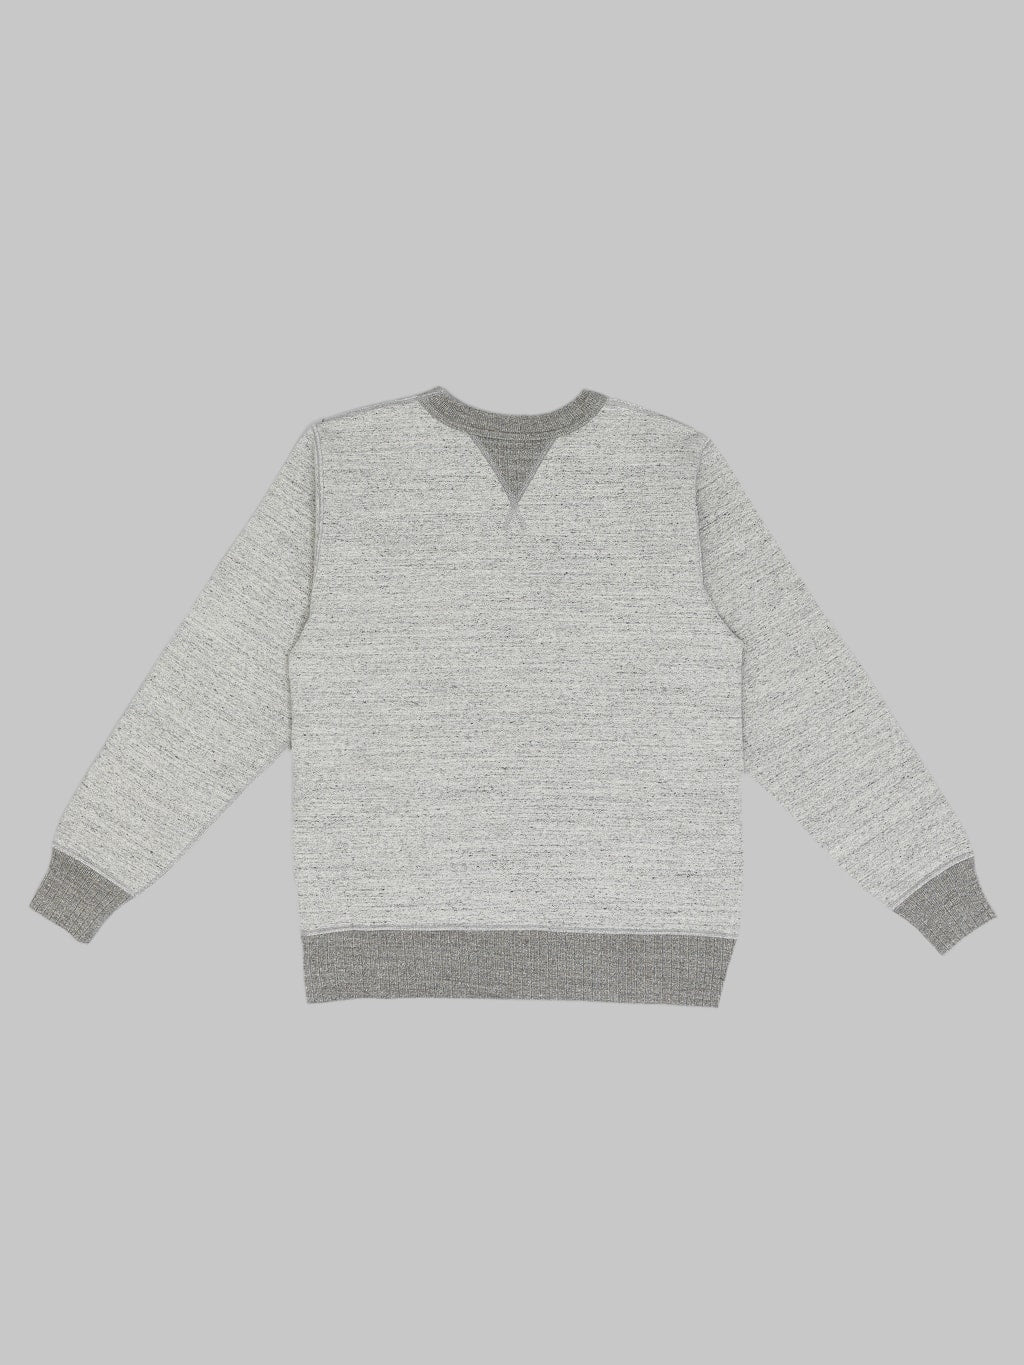 Whitesville Loopwheel Sweatshirt heather grey back